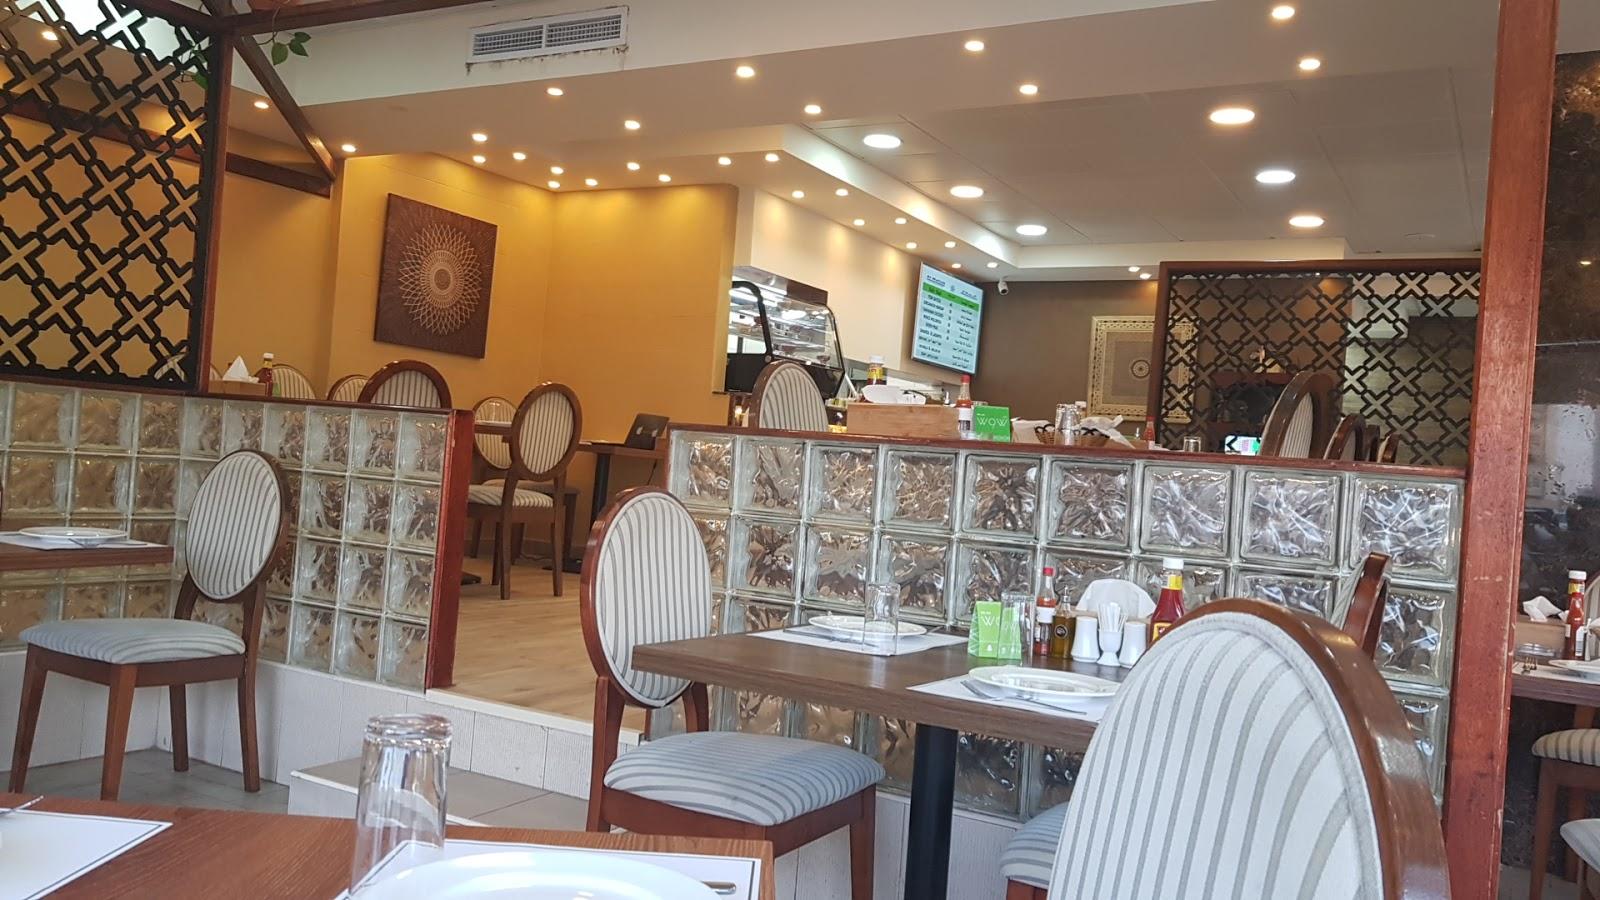 Al Mallah Restaurant